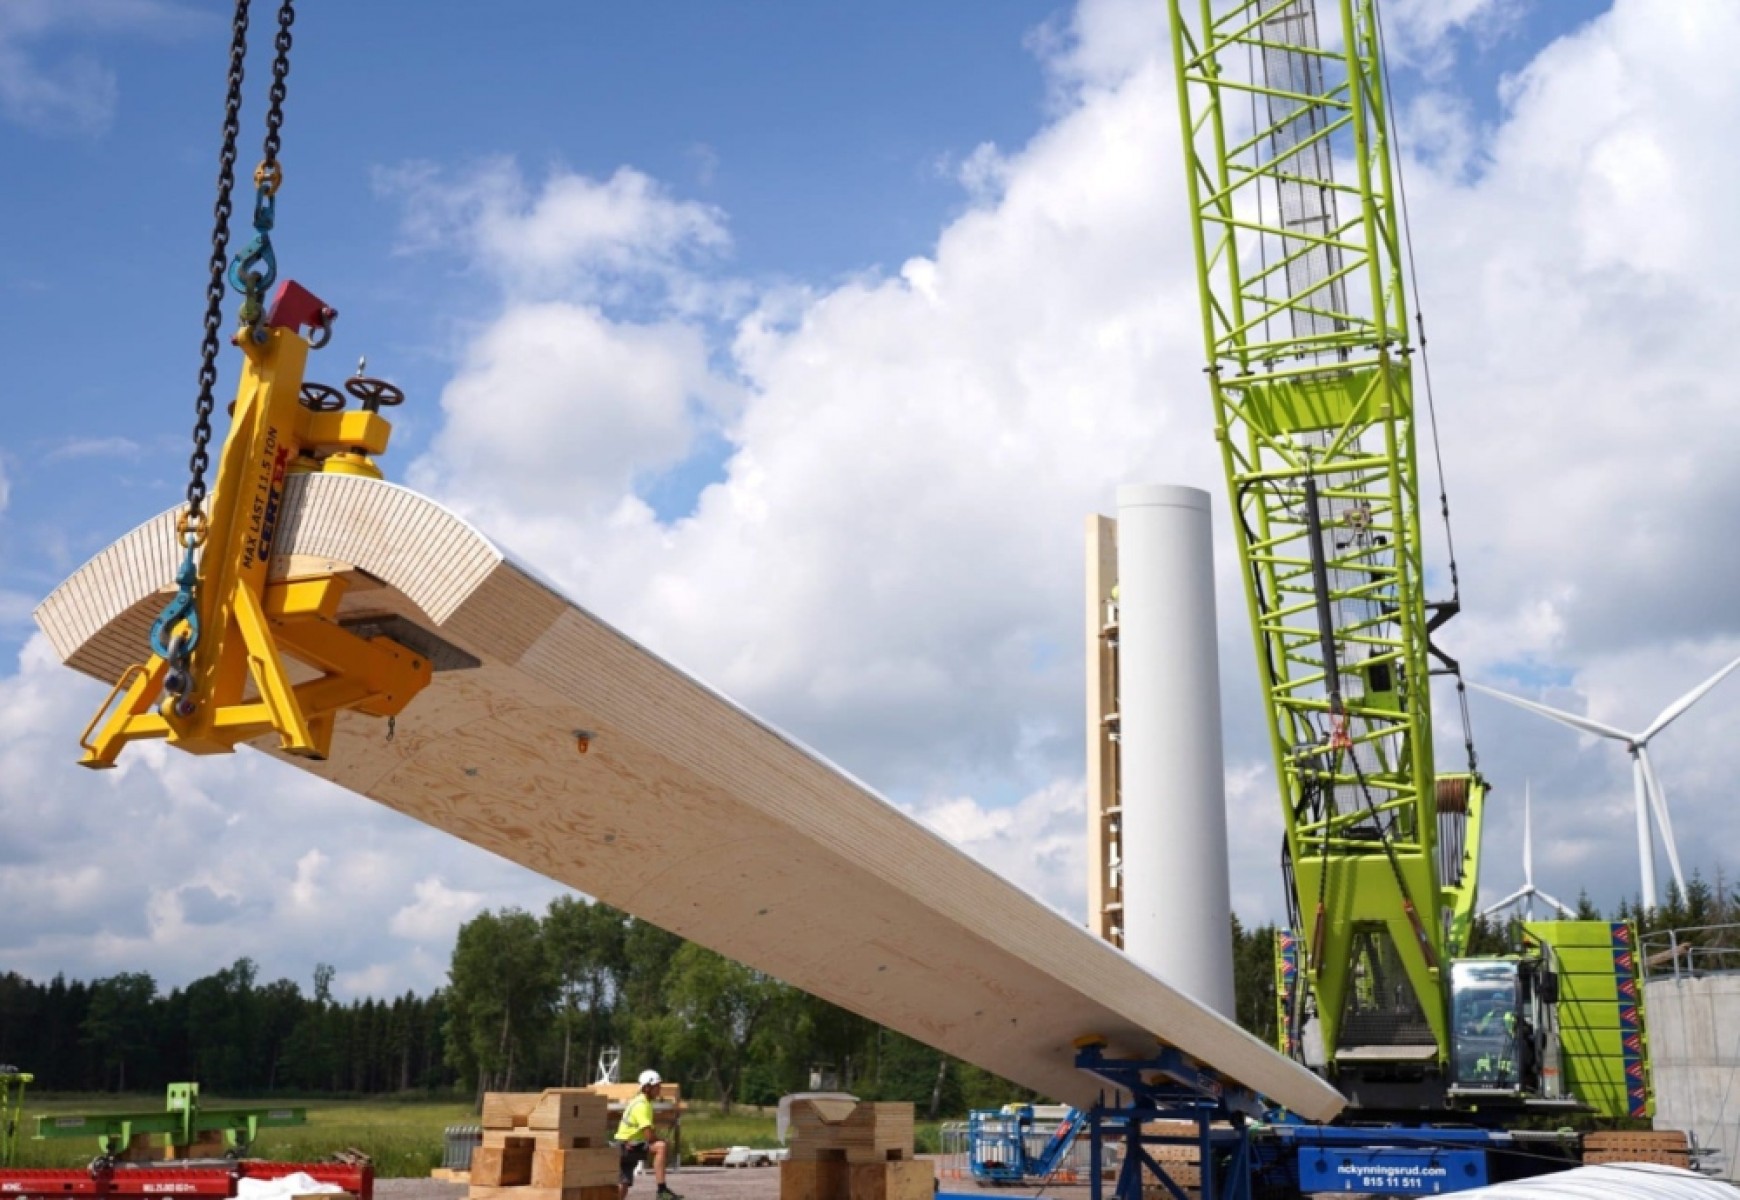 Hamarosan megépül a világ legmagasabb, fából készült szélturbinája